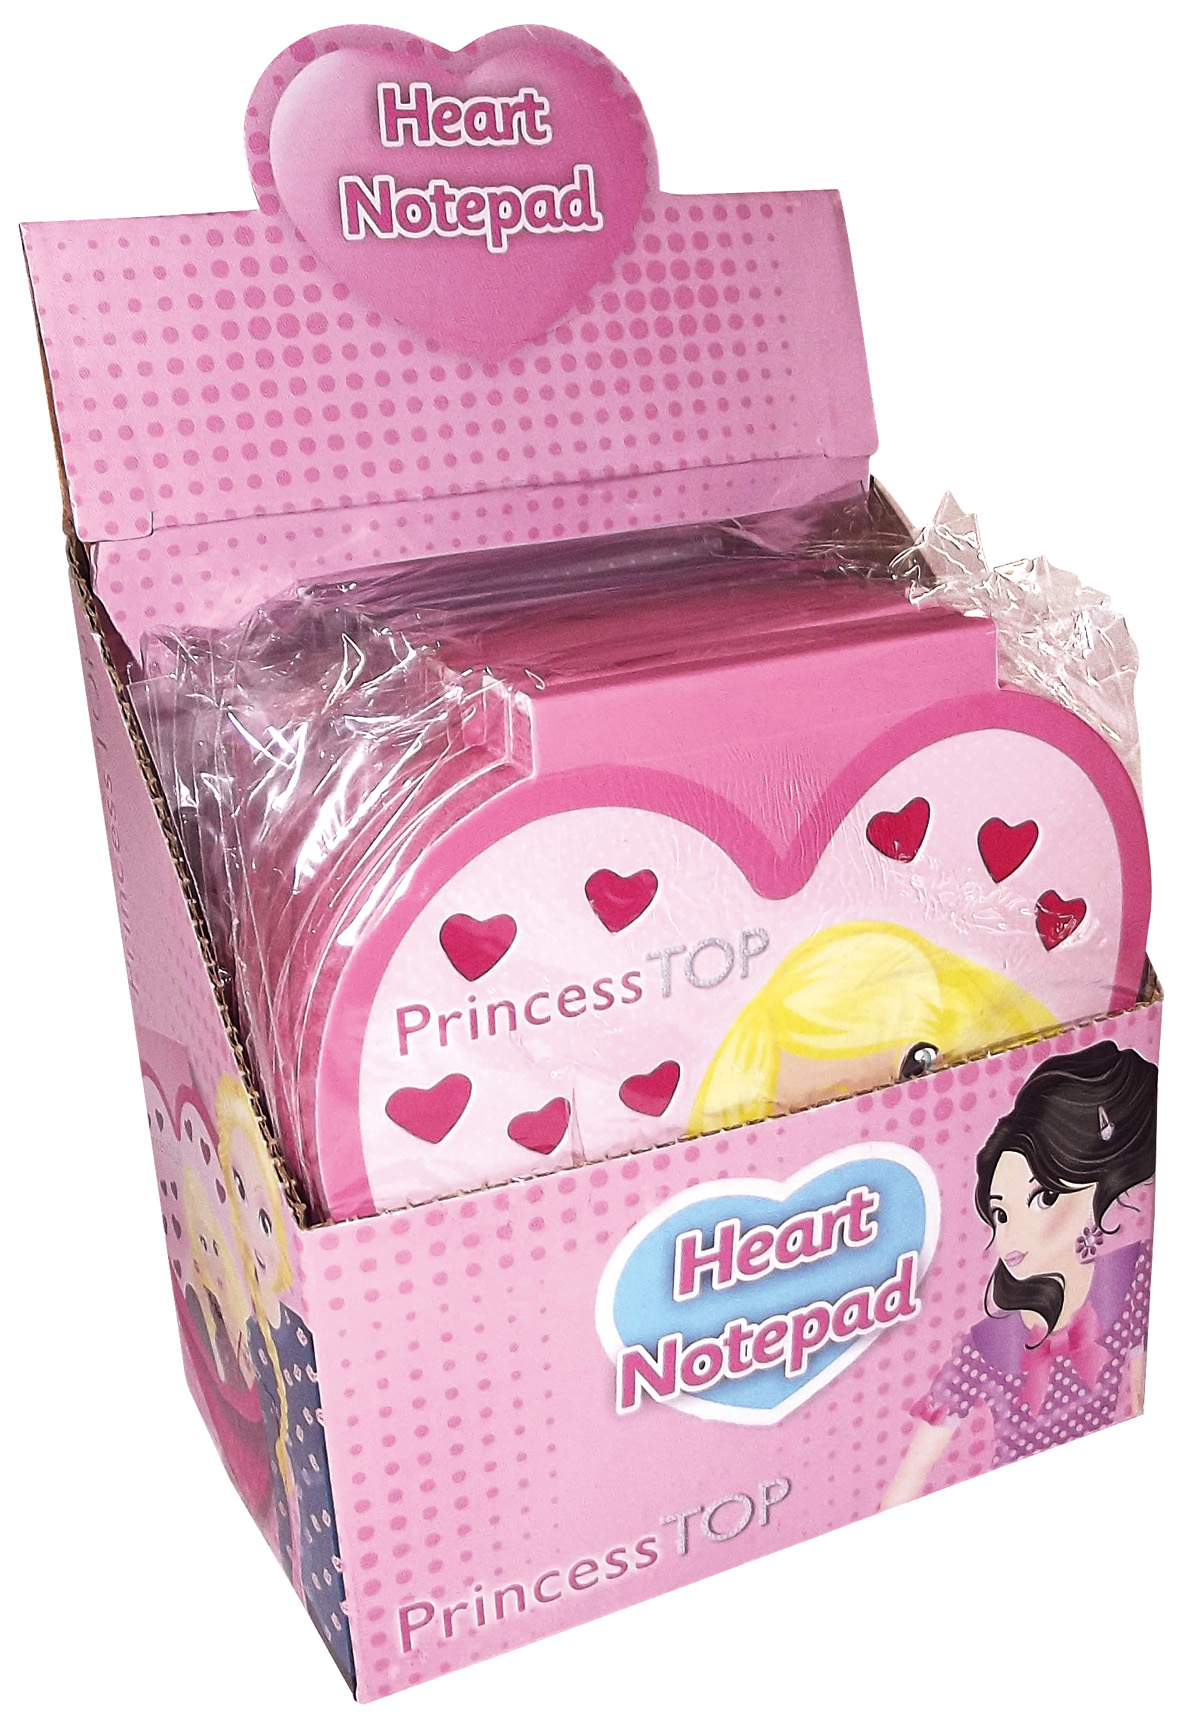 Princess Top-Heart Notepad